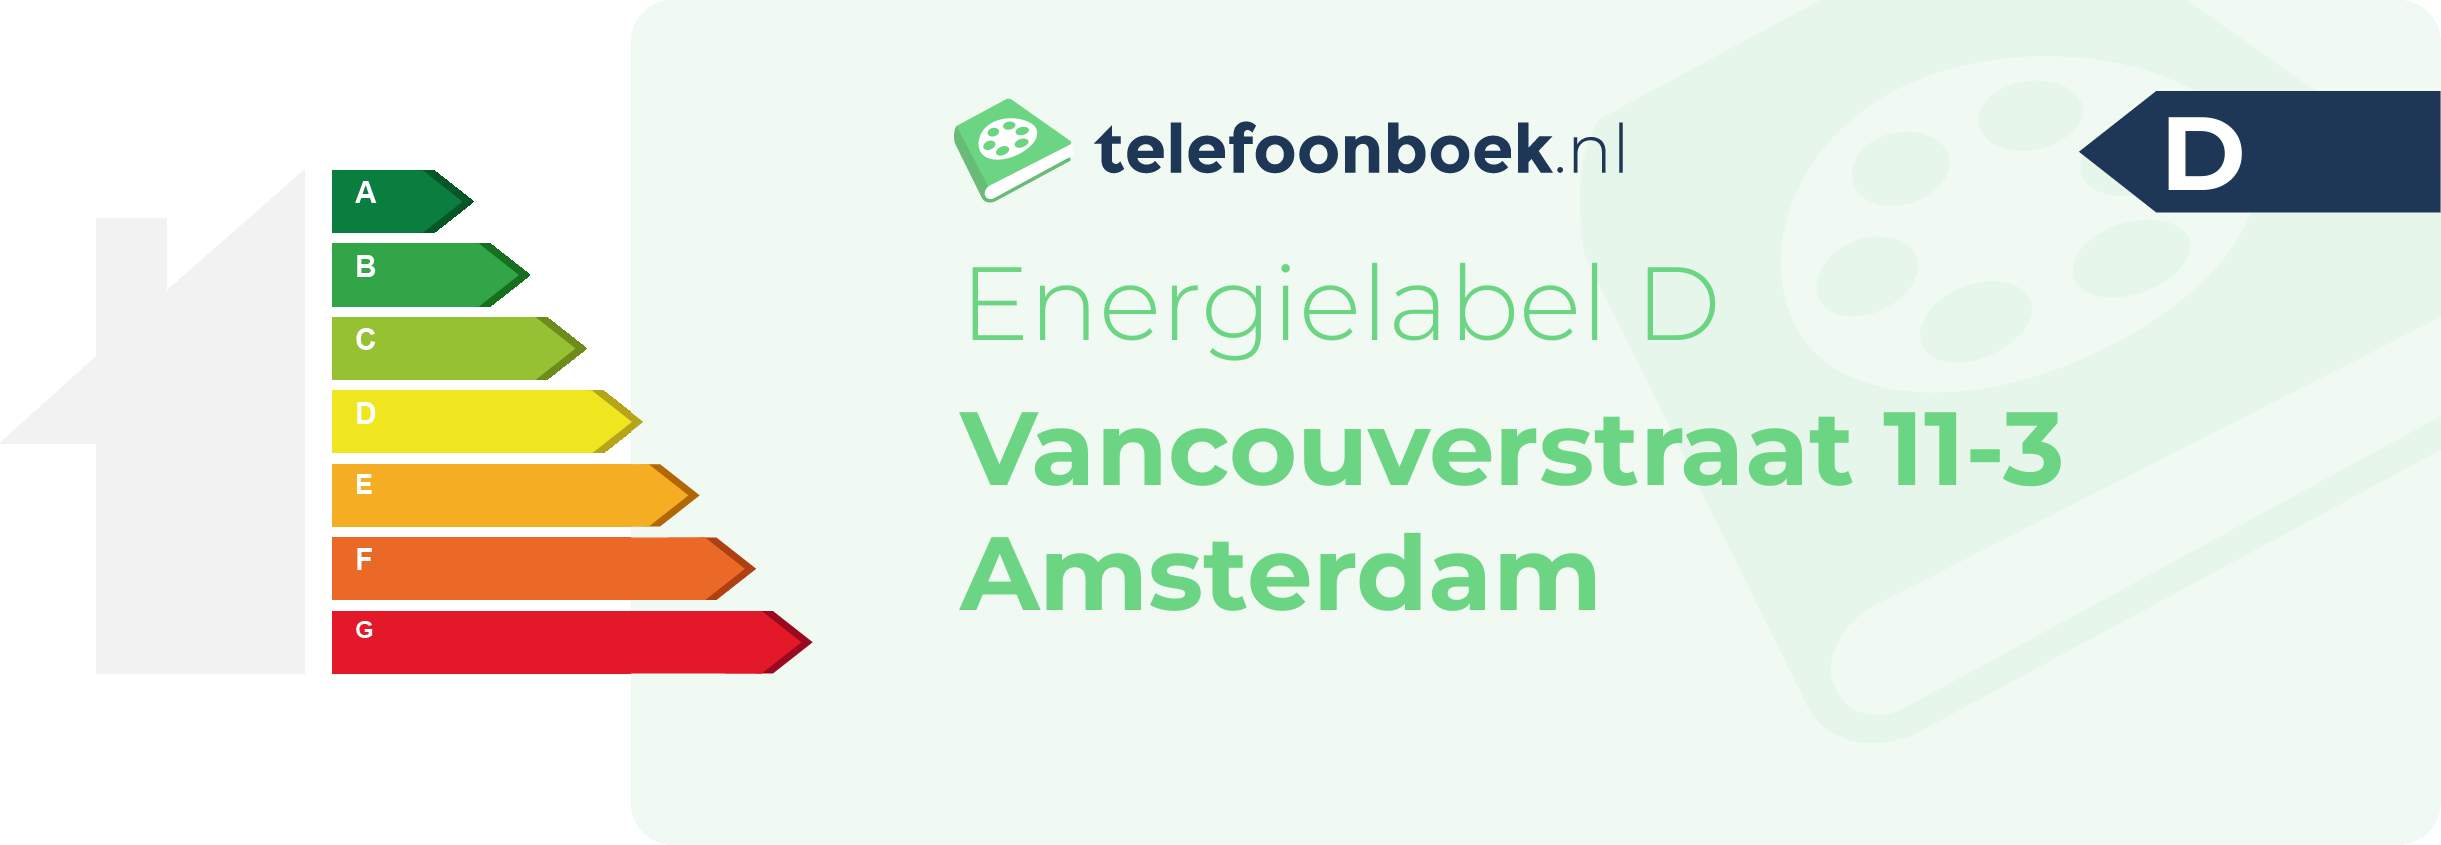 Energielabel Vancouverstraat 11-3 Amsterdam